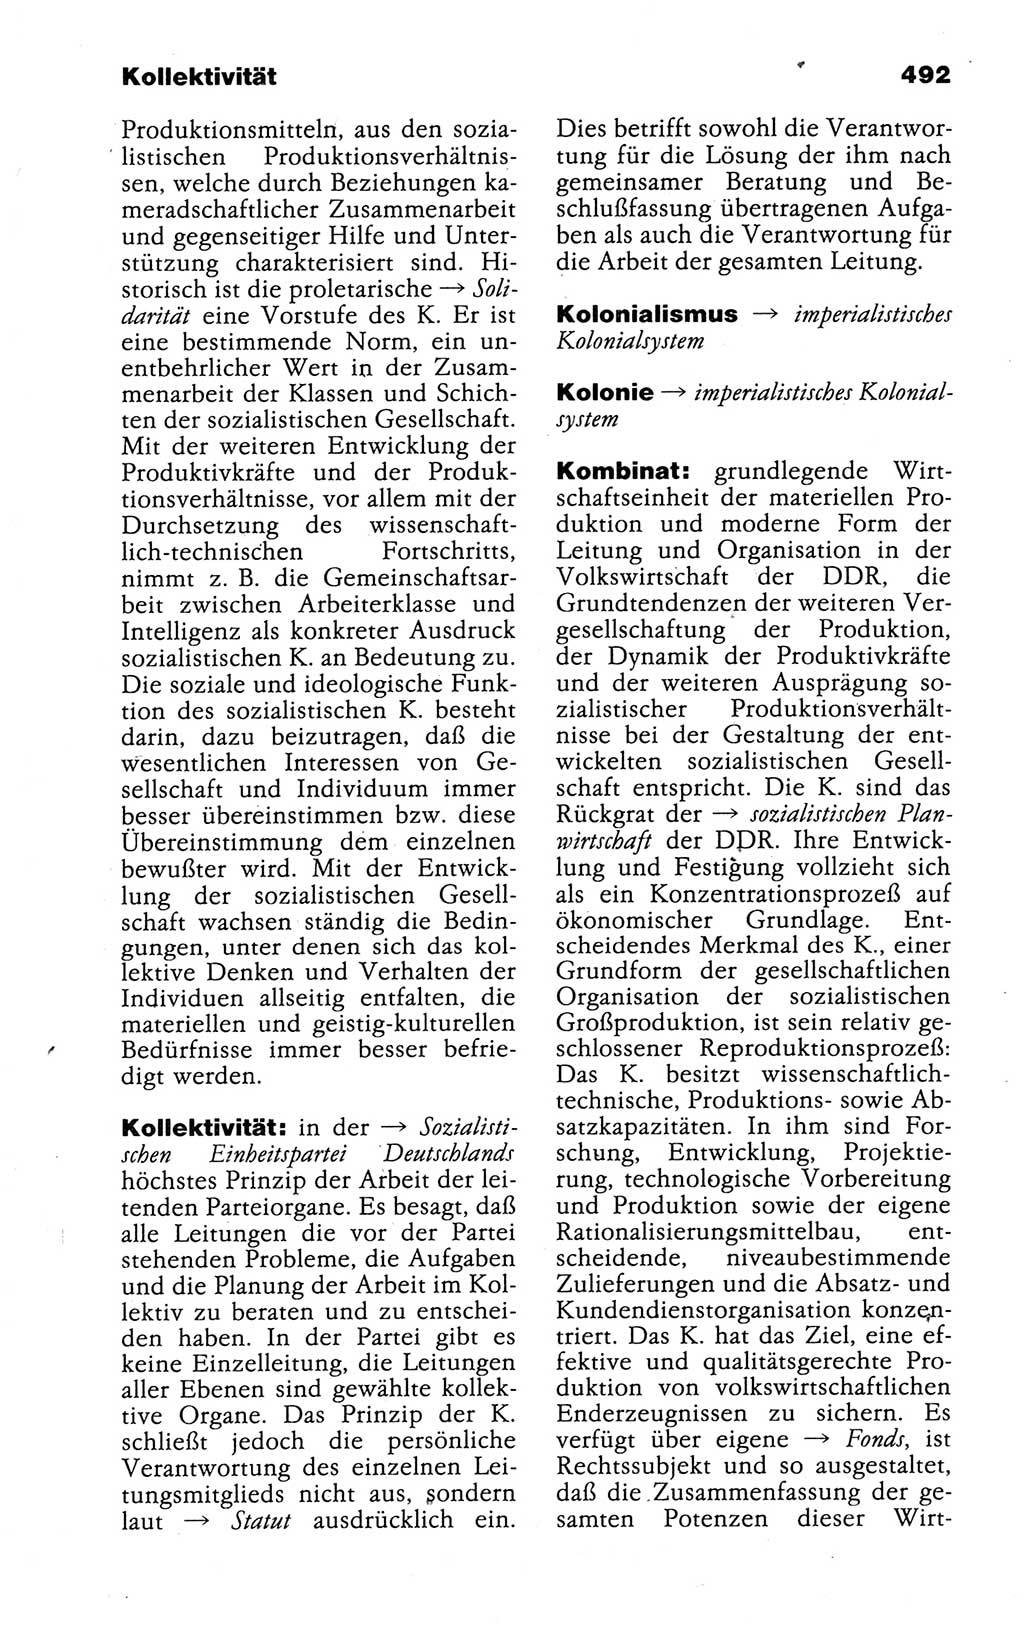 Kleines politisches Wörterbuch [Deutsche Demokratische Republik (DDR)] 1988, Seite 492 (Kl. pol. Wb. DDR 1988, S. 492)